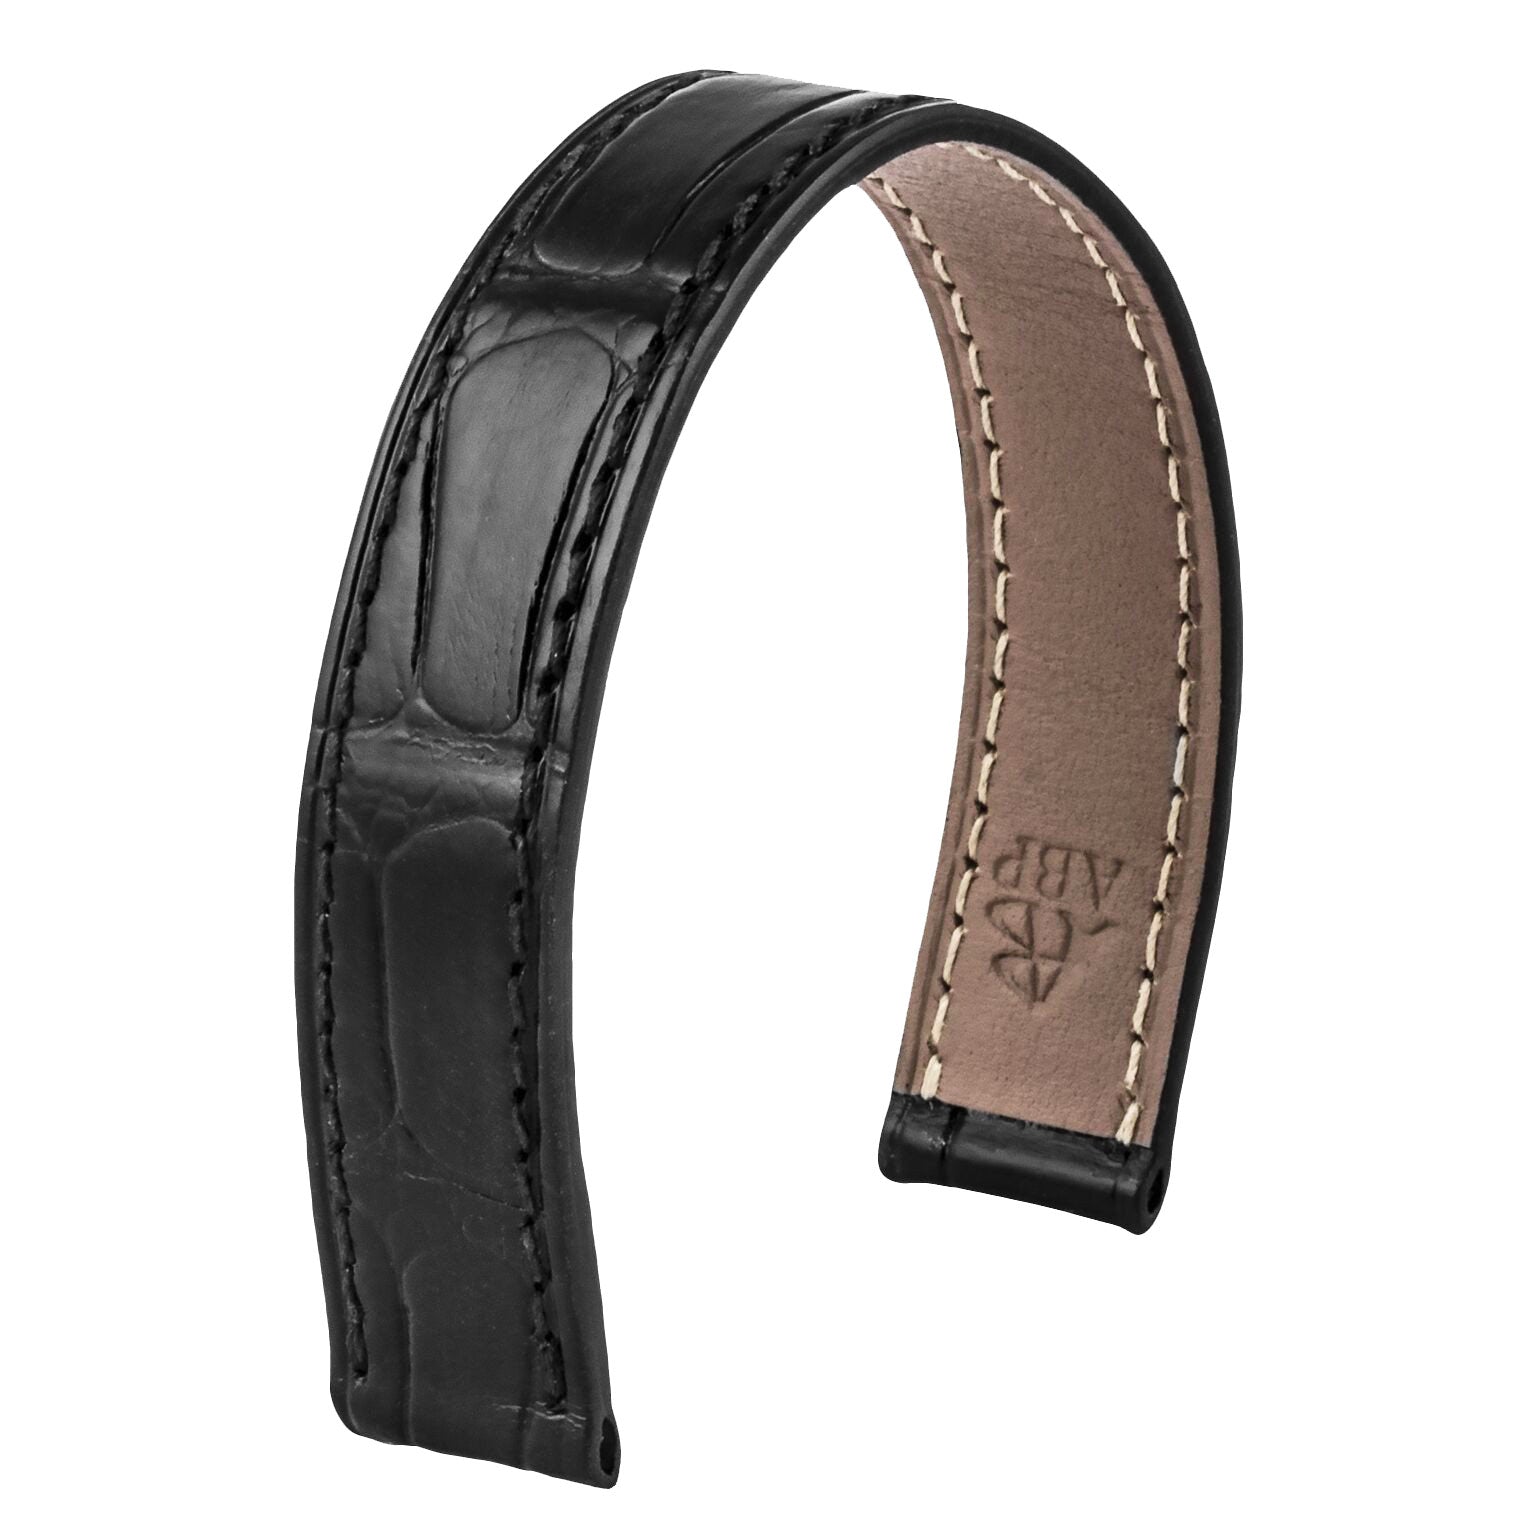 Bracelet-montre cuir - Poiray - Alligator (noir, marron, gris, bleu) - watch band leather strap - ABP Concept -